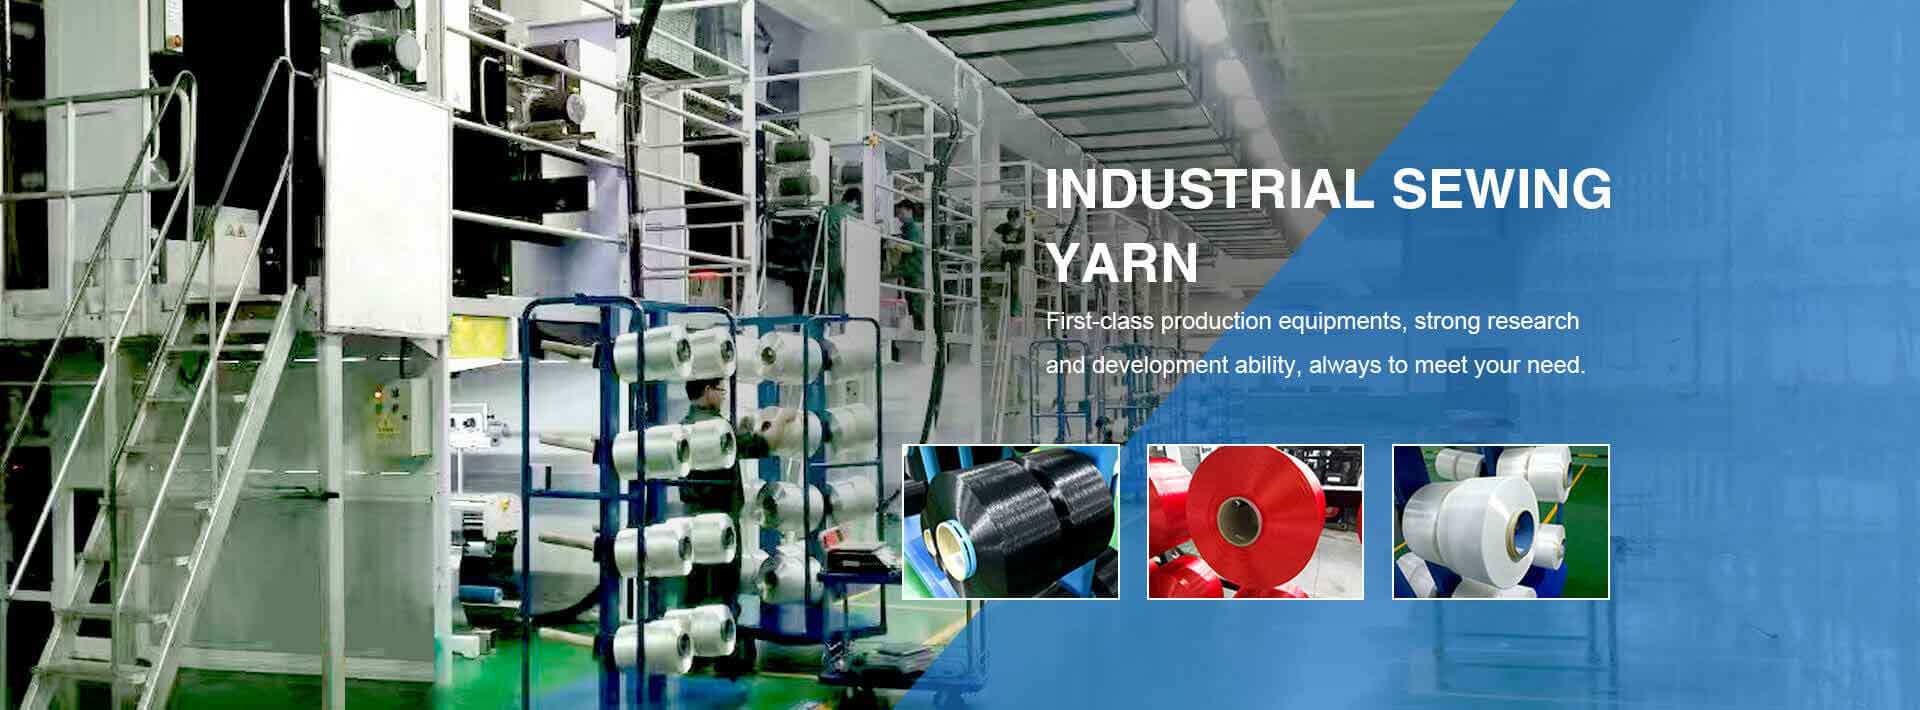 Nylon industrial yarn